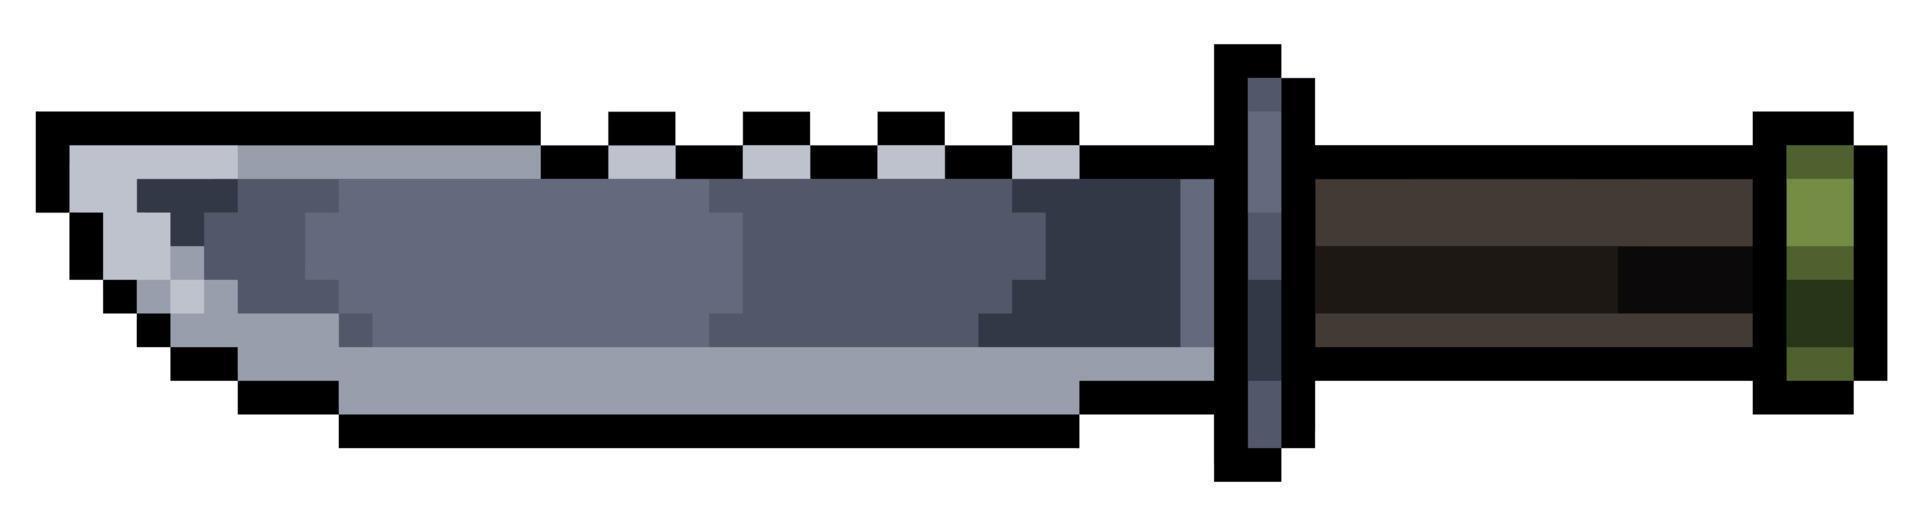 pixel art kniv objekt för spel 8bit på vit bakgrund vektor